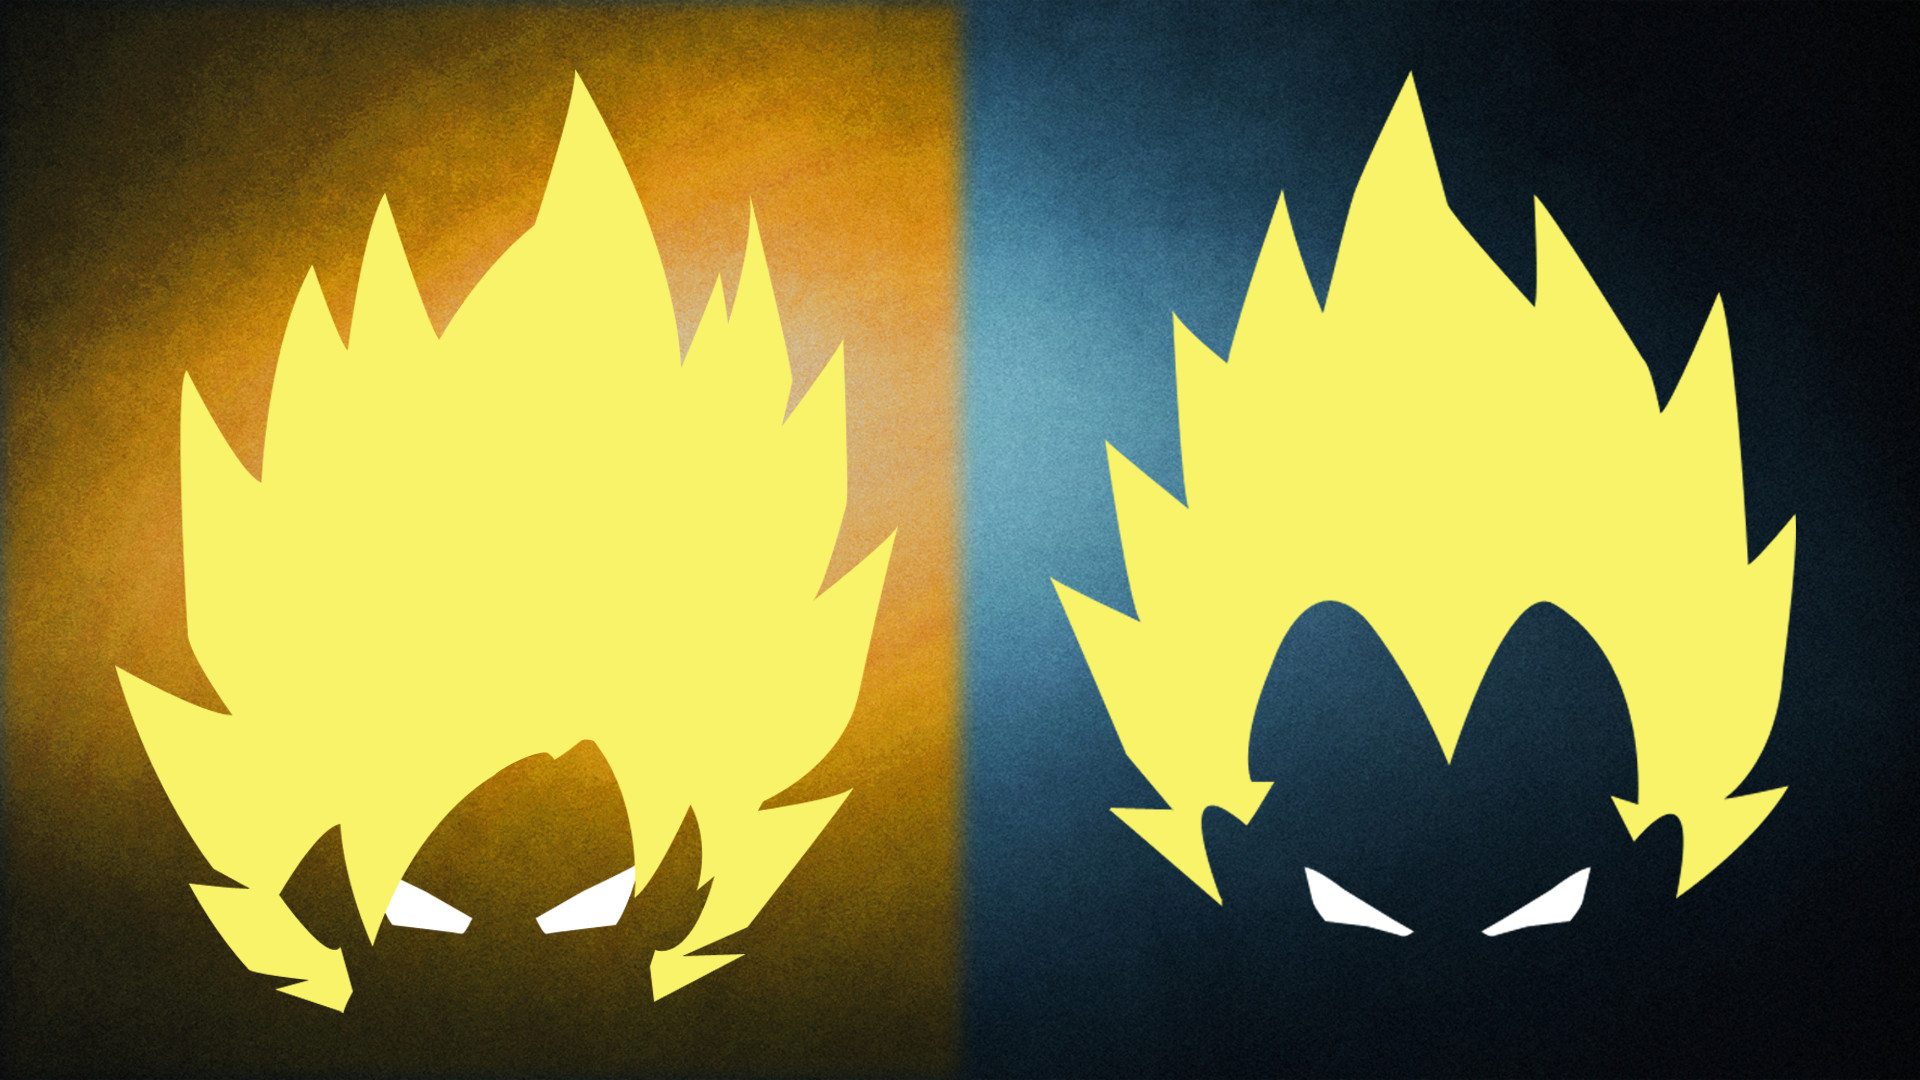 Goku Symbol Wallpapers